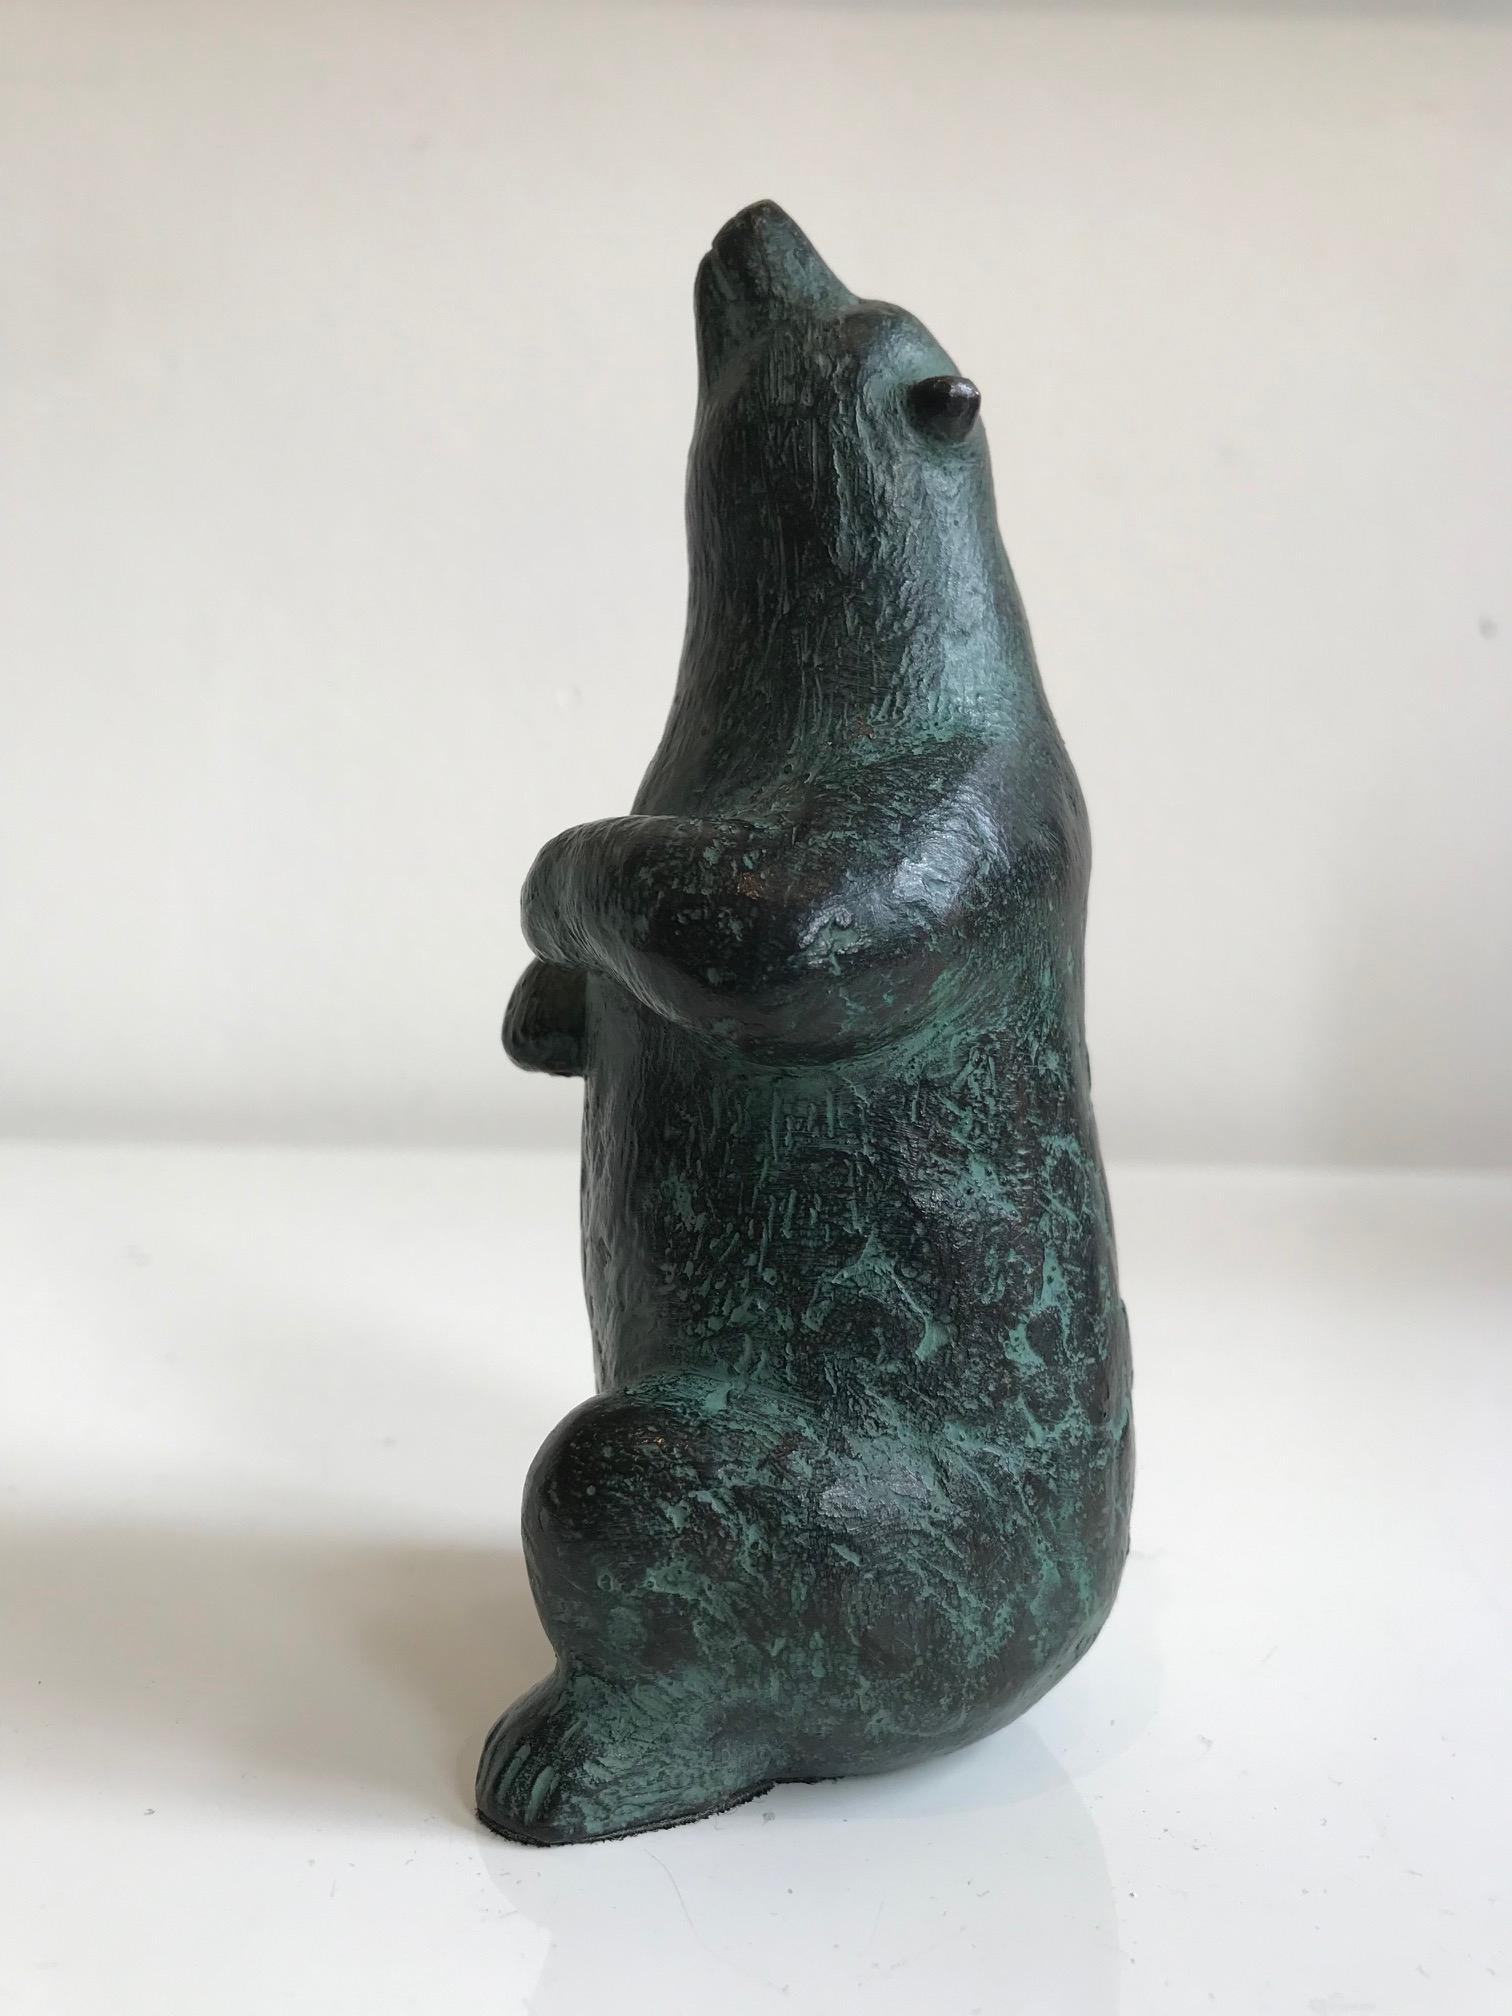 Les sculptures en bronze de Karin Beek (1948) se caractérisent par un style amical, rond et en même temps monumental. Ils respirent l'atmosphère de la vie quotidienne. Beek souhaite que ses sculptures soient accessibles, qu'elles touchent le